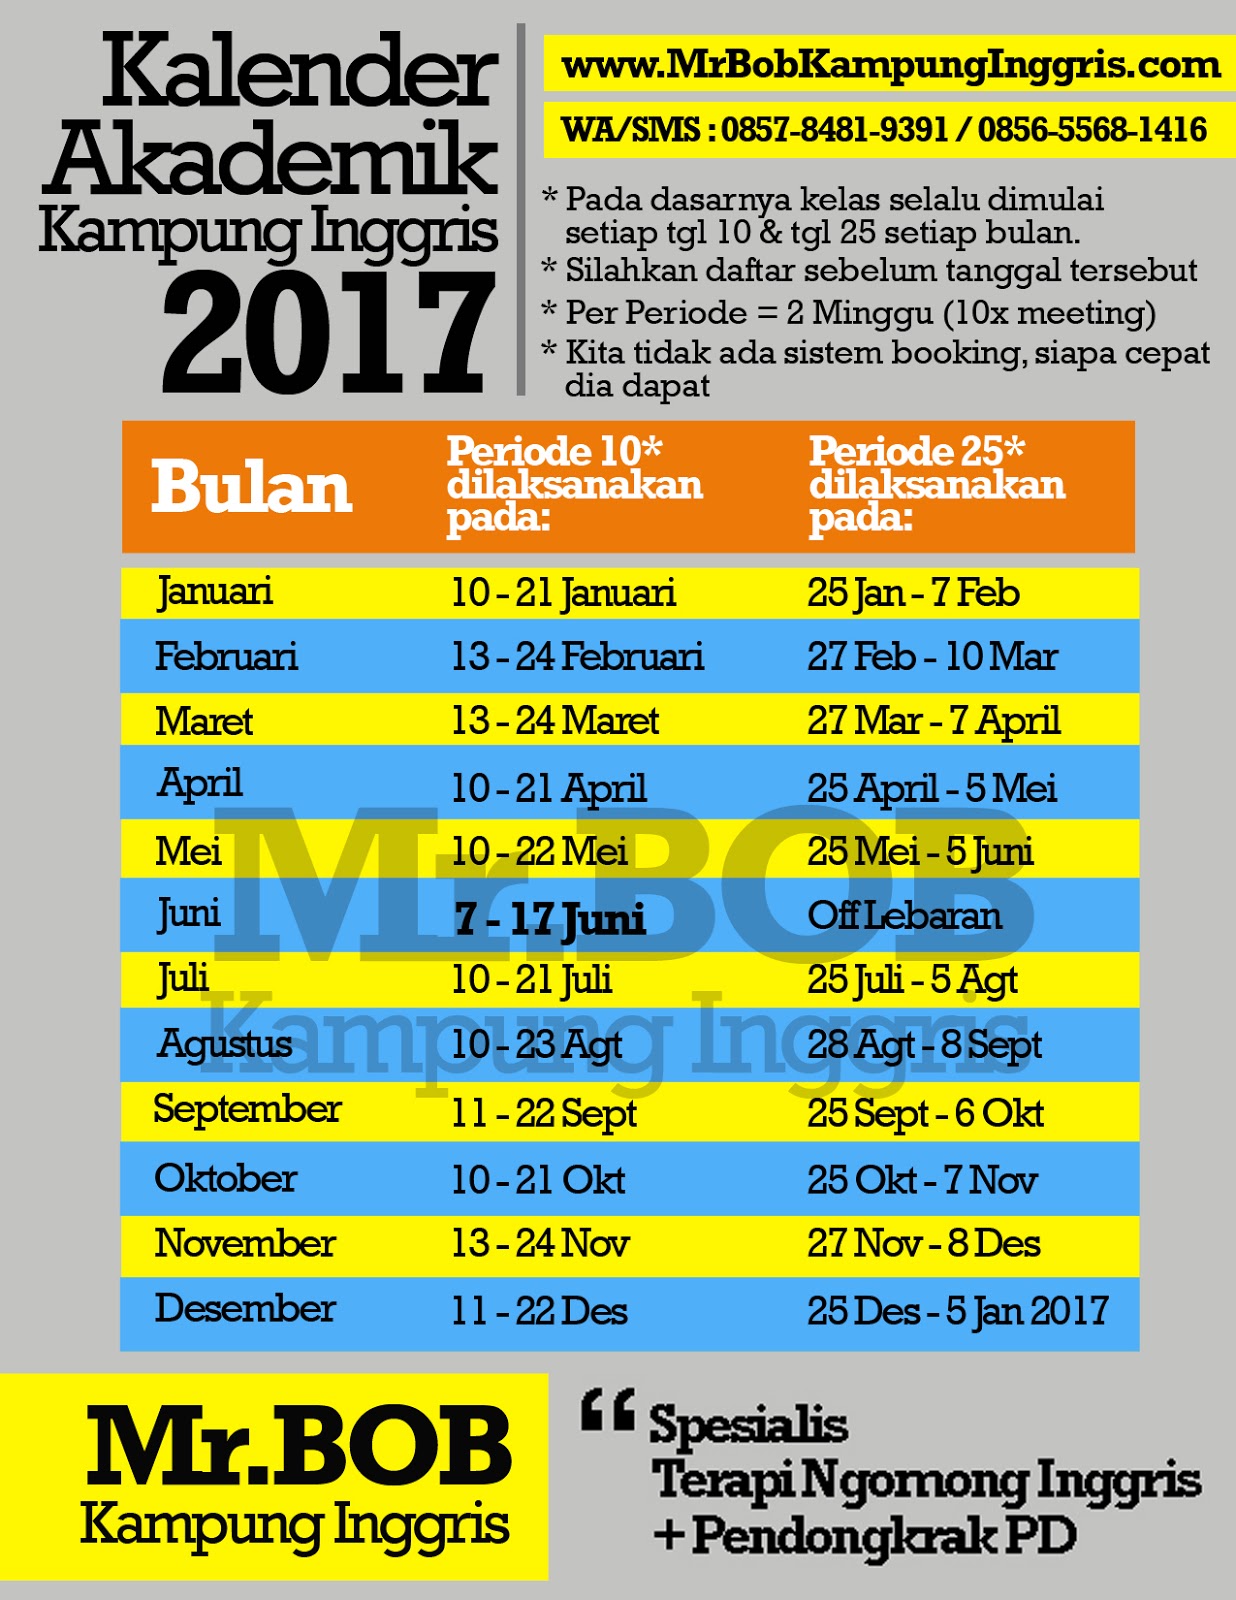 Kalender akademik 2017 copy